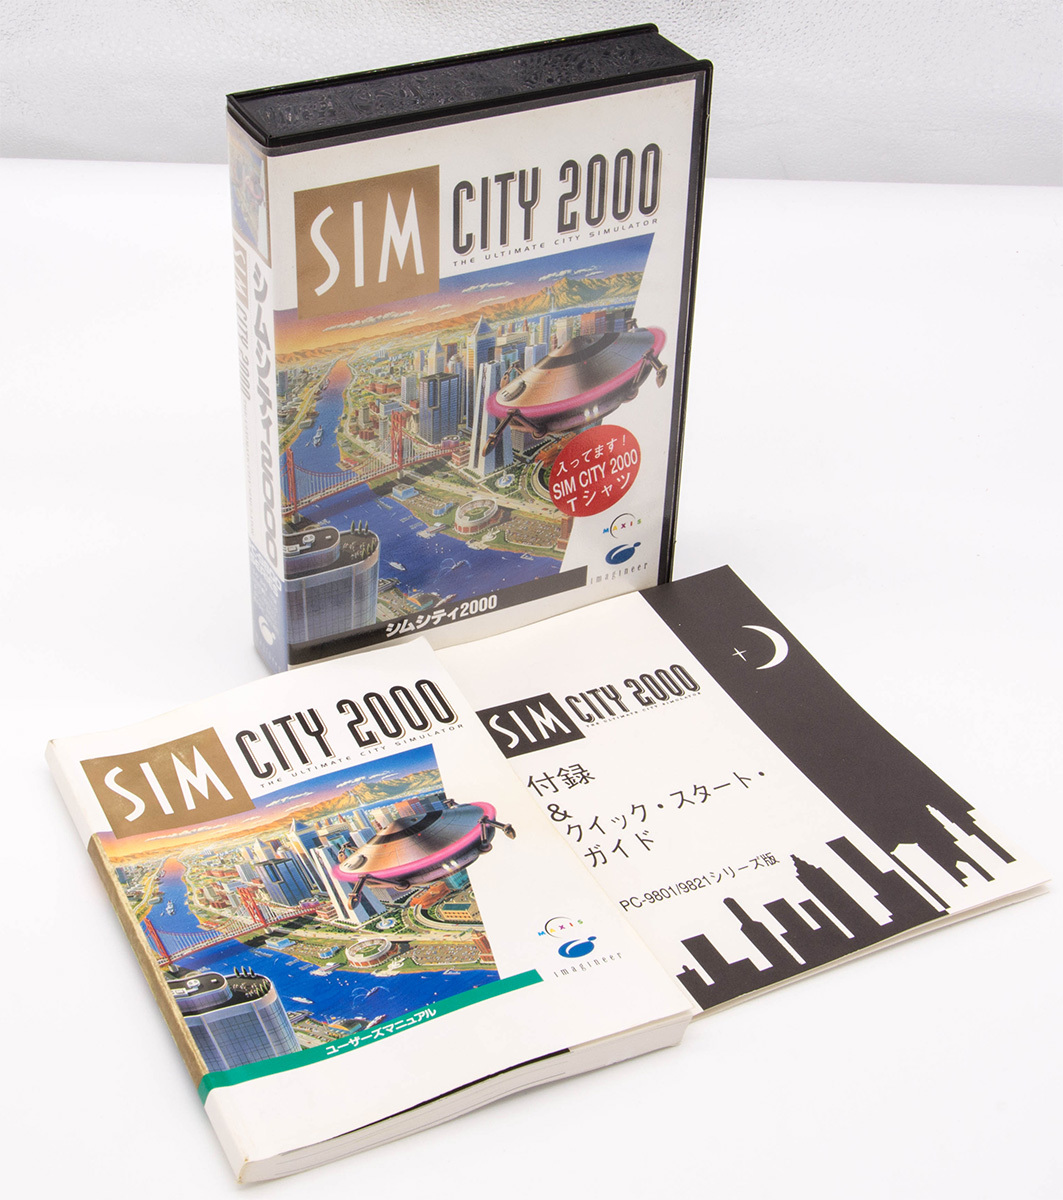 SIMCITY 2000 シムシティ2000 imagineer PC-9801 PC-9821版 3.5" 2HD 3枚組 箱 マニュアル付 動作未確認_画像1